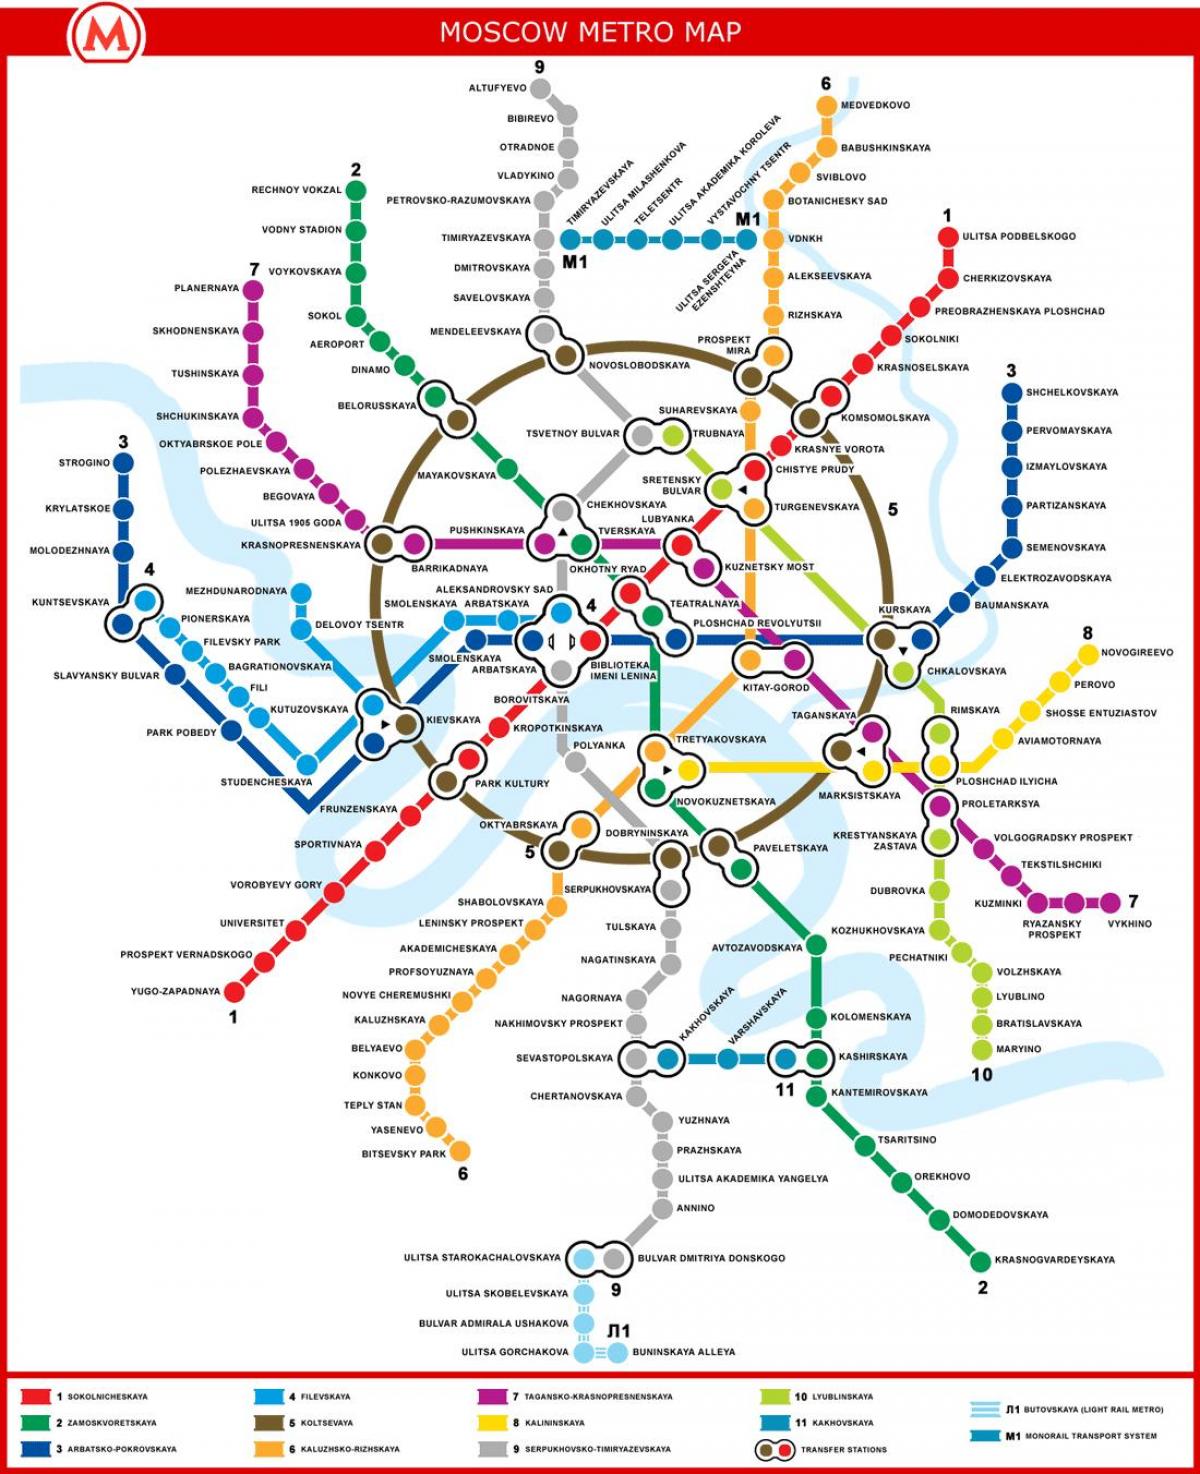 Xem bản đồ tàu điện ngầm Moscow và khám phá hệ thống giao thông công cộng tiện lợi tại thủ đô nước Nga. Tận hưởng những tuyến đường tàu điện ngầm tuyệt đẹp và hiện đại nhất thế giới.